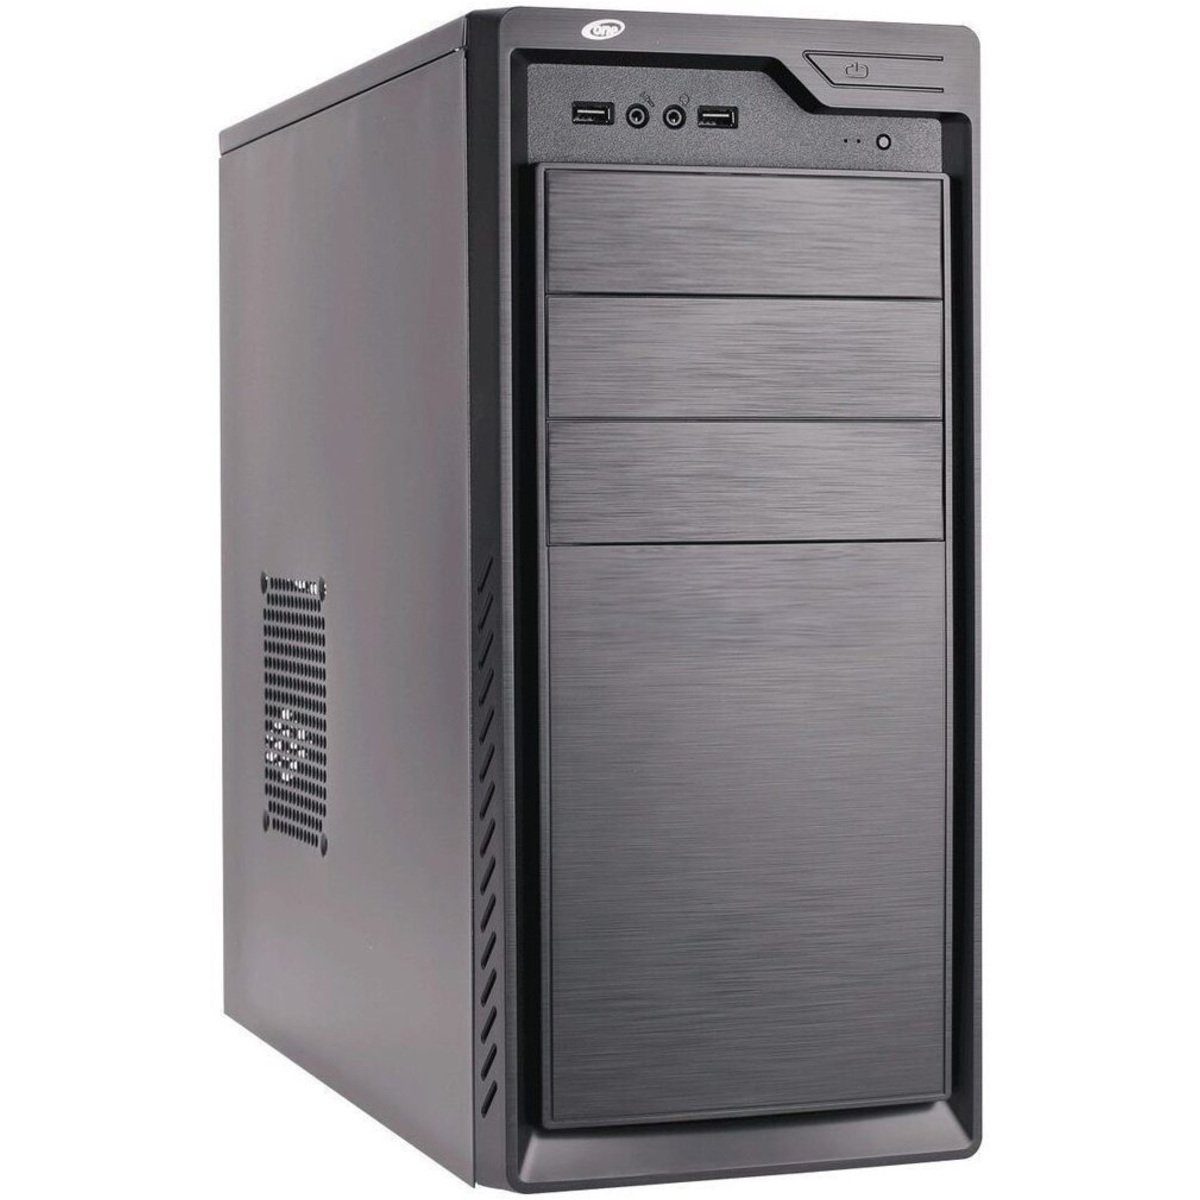 ONE Business PC AO01 Business-PC (AMD Ryzen 5 5600G, Keine Grafikkarte)